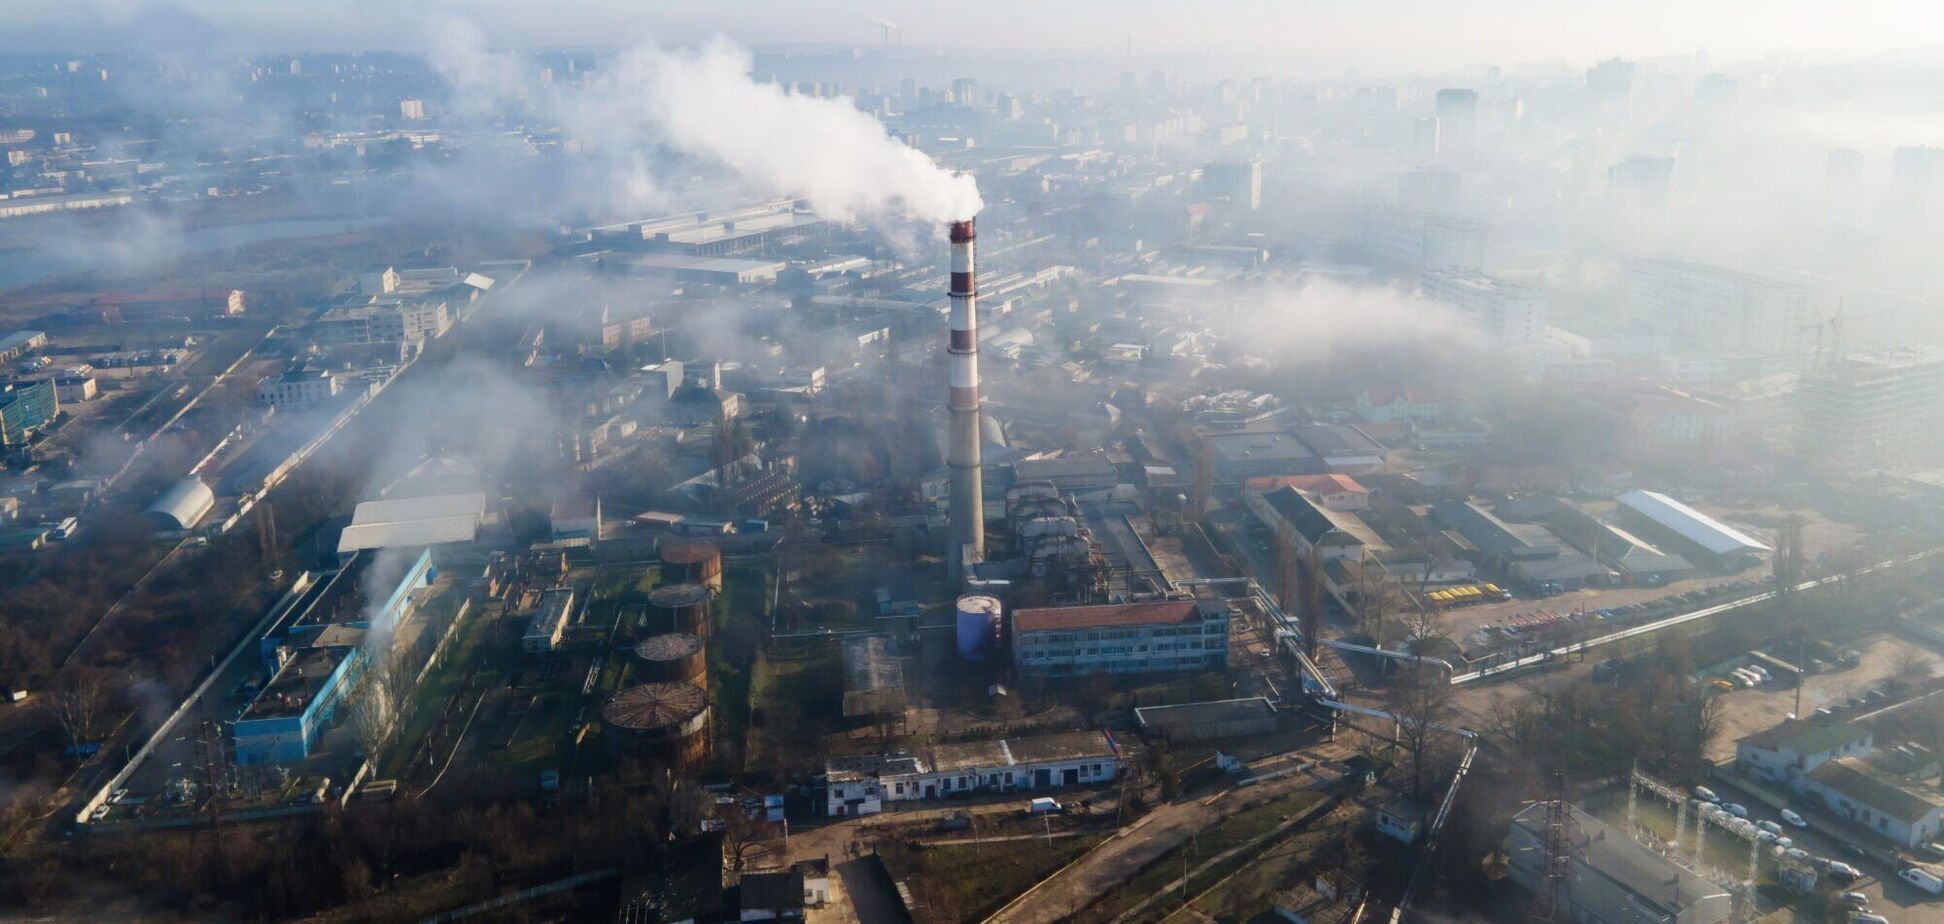 Реформа промышленного загрязнения должна стать предметом обсуждения с бизнесом, – Кудрявцев